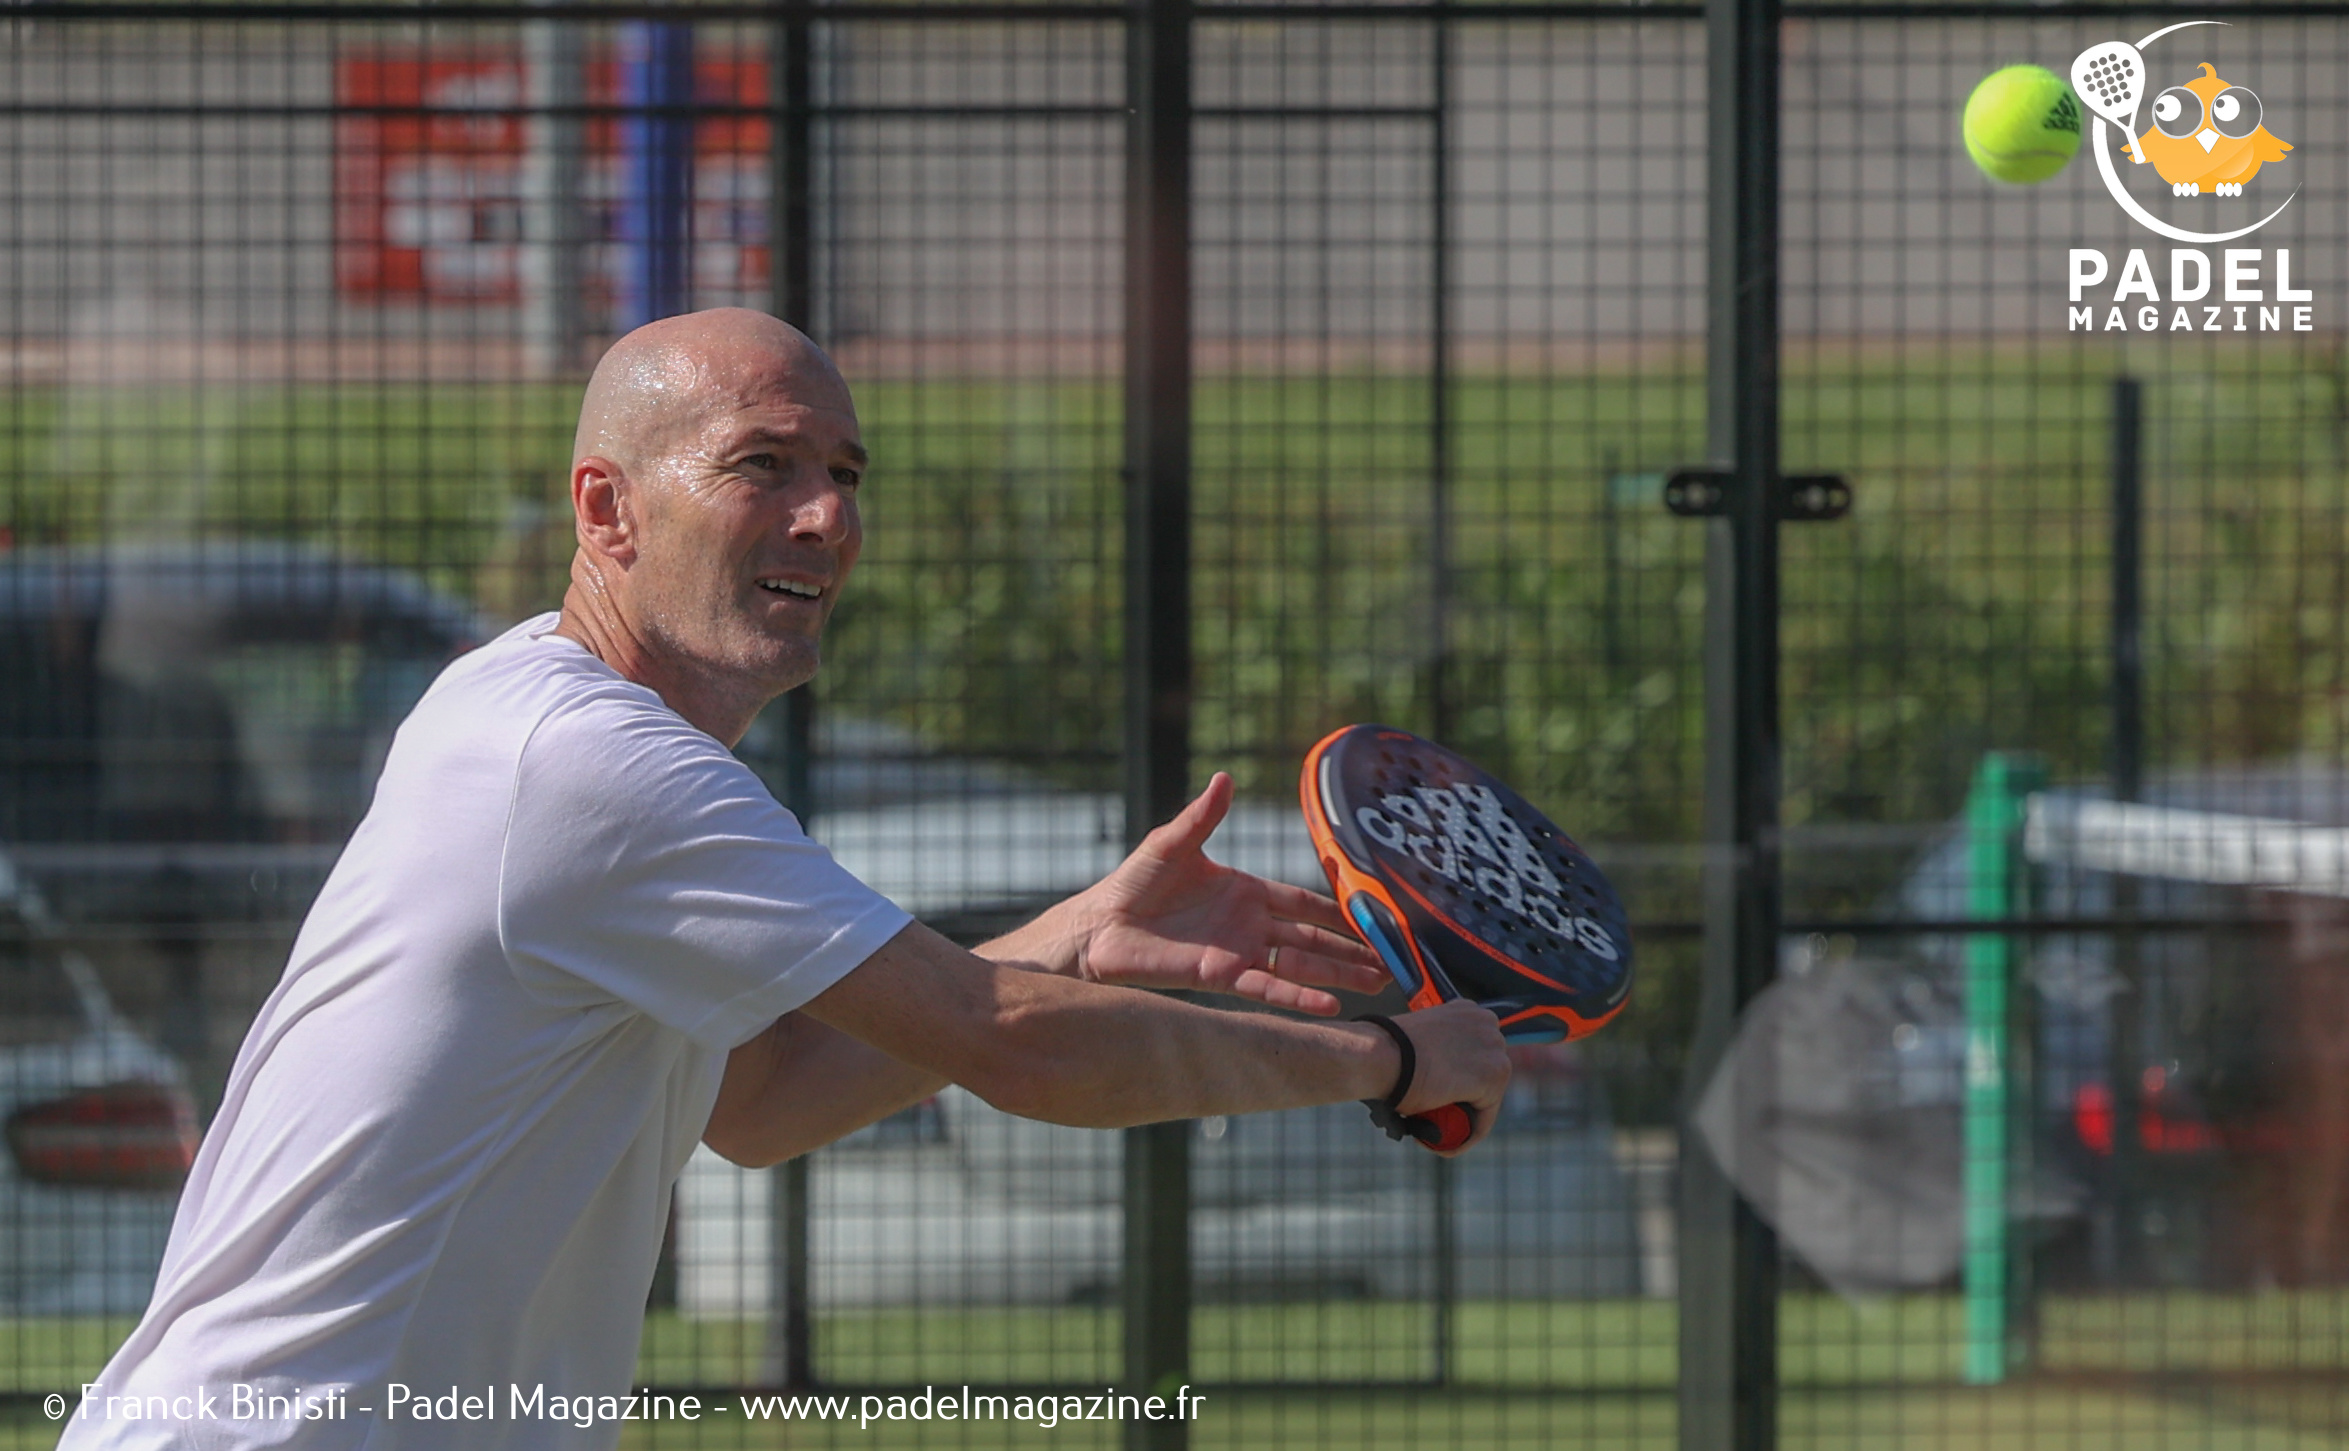 Zidane: "Den padel utvecklas i hög hastighet i Frankrike”